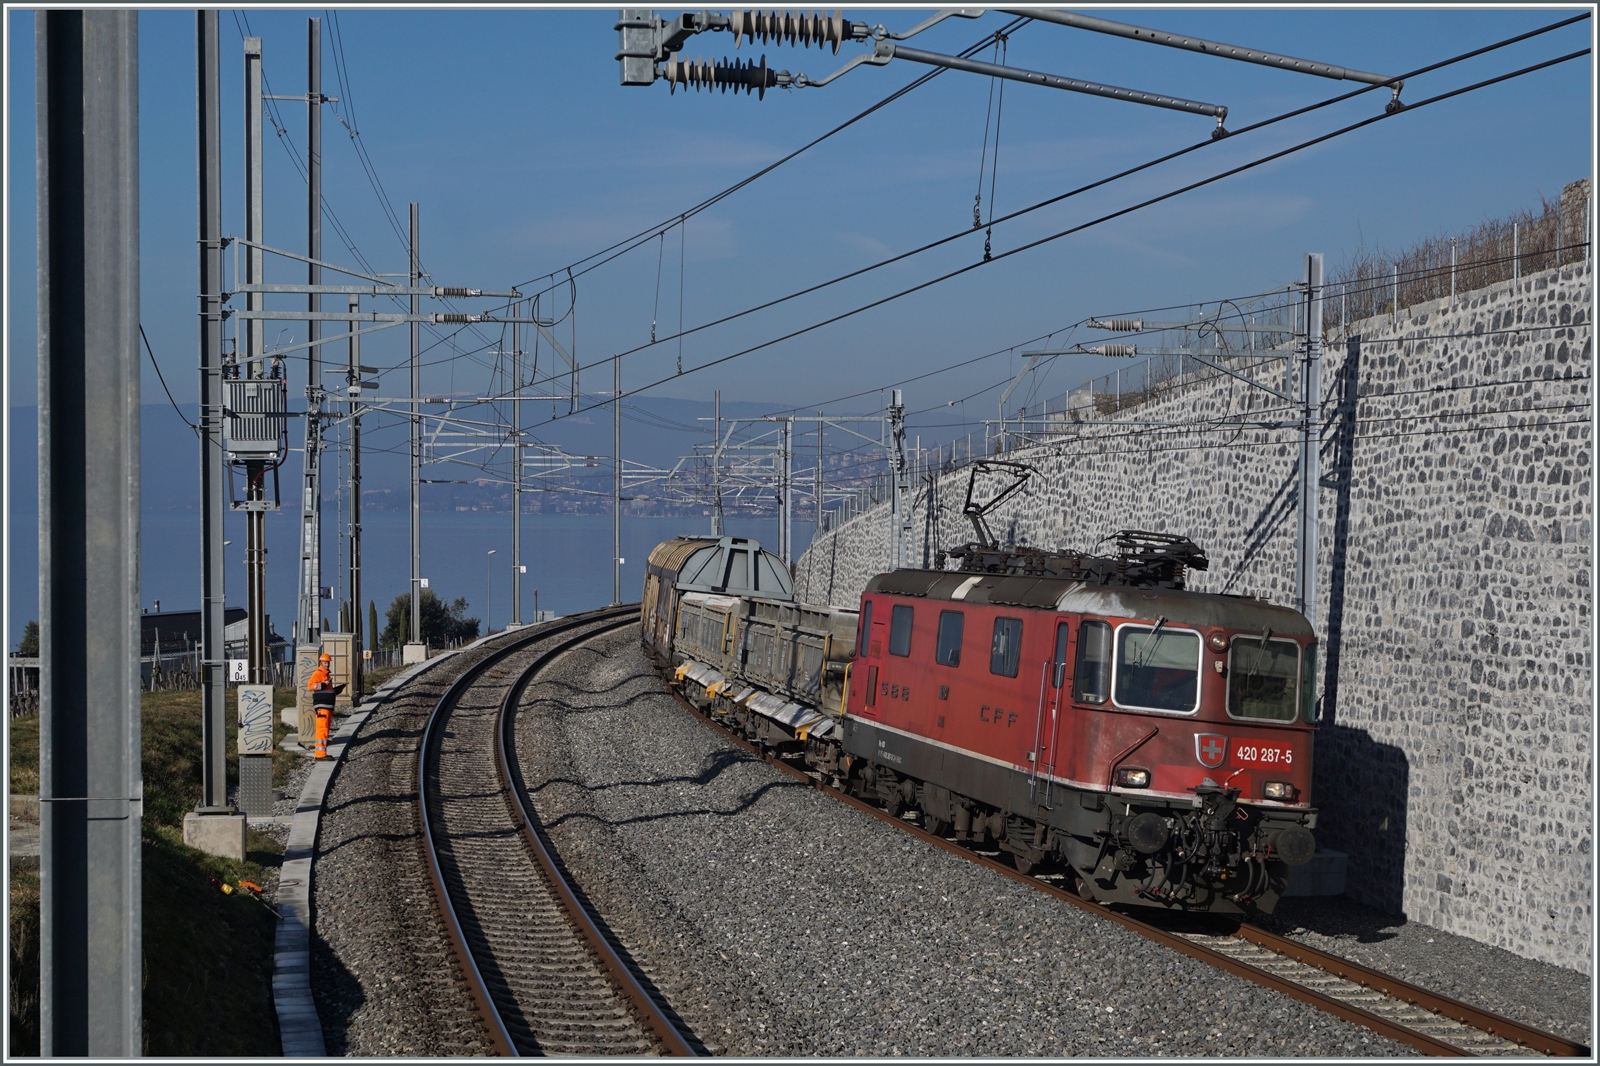 An der gleichen Stelle zeigt sich die SBB Re 4/4 II 11285 (Re 420 287-5) mit einem Güterzug auf der Fahret in Richtung Villeneuve.

16. Februar 2023  